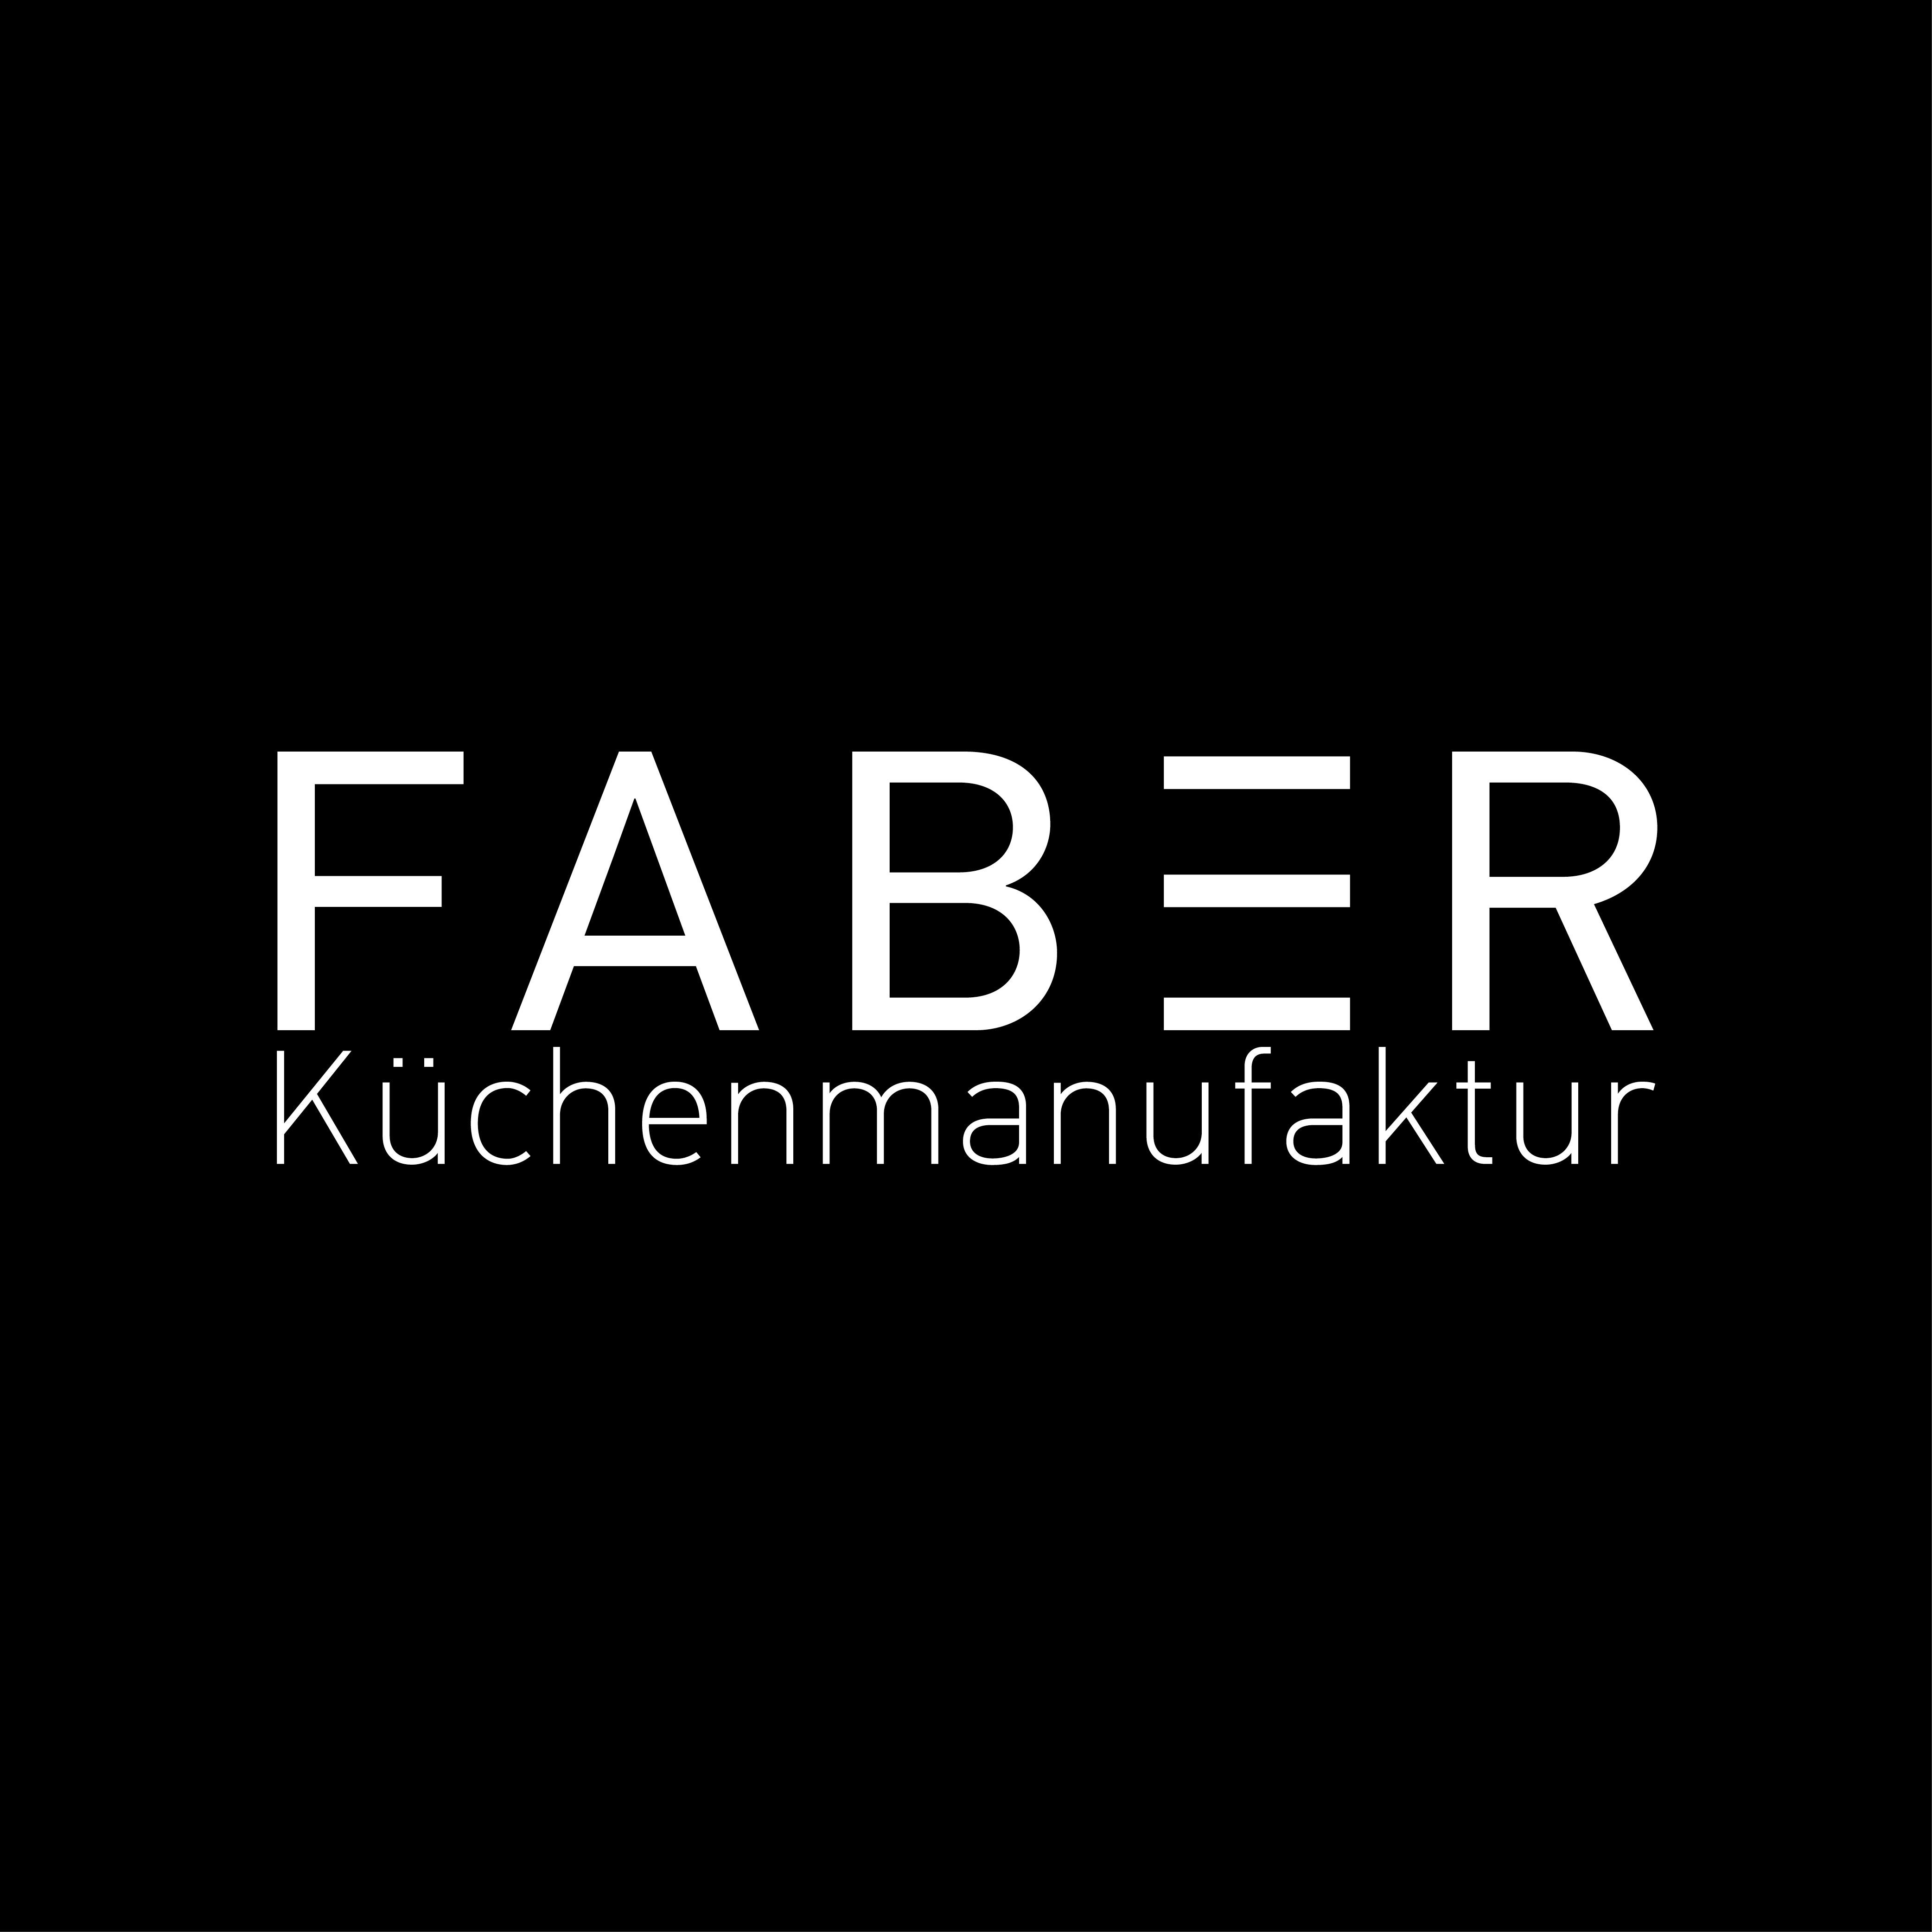 FABER Küchenmanufaktur GmbH in Flein